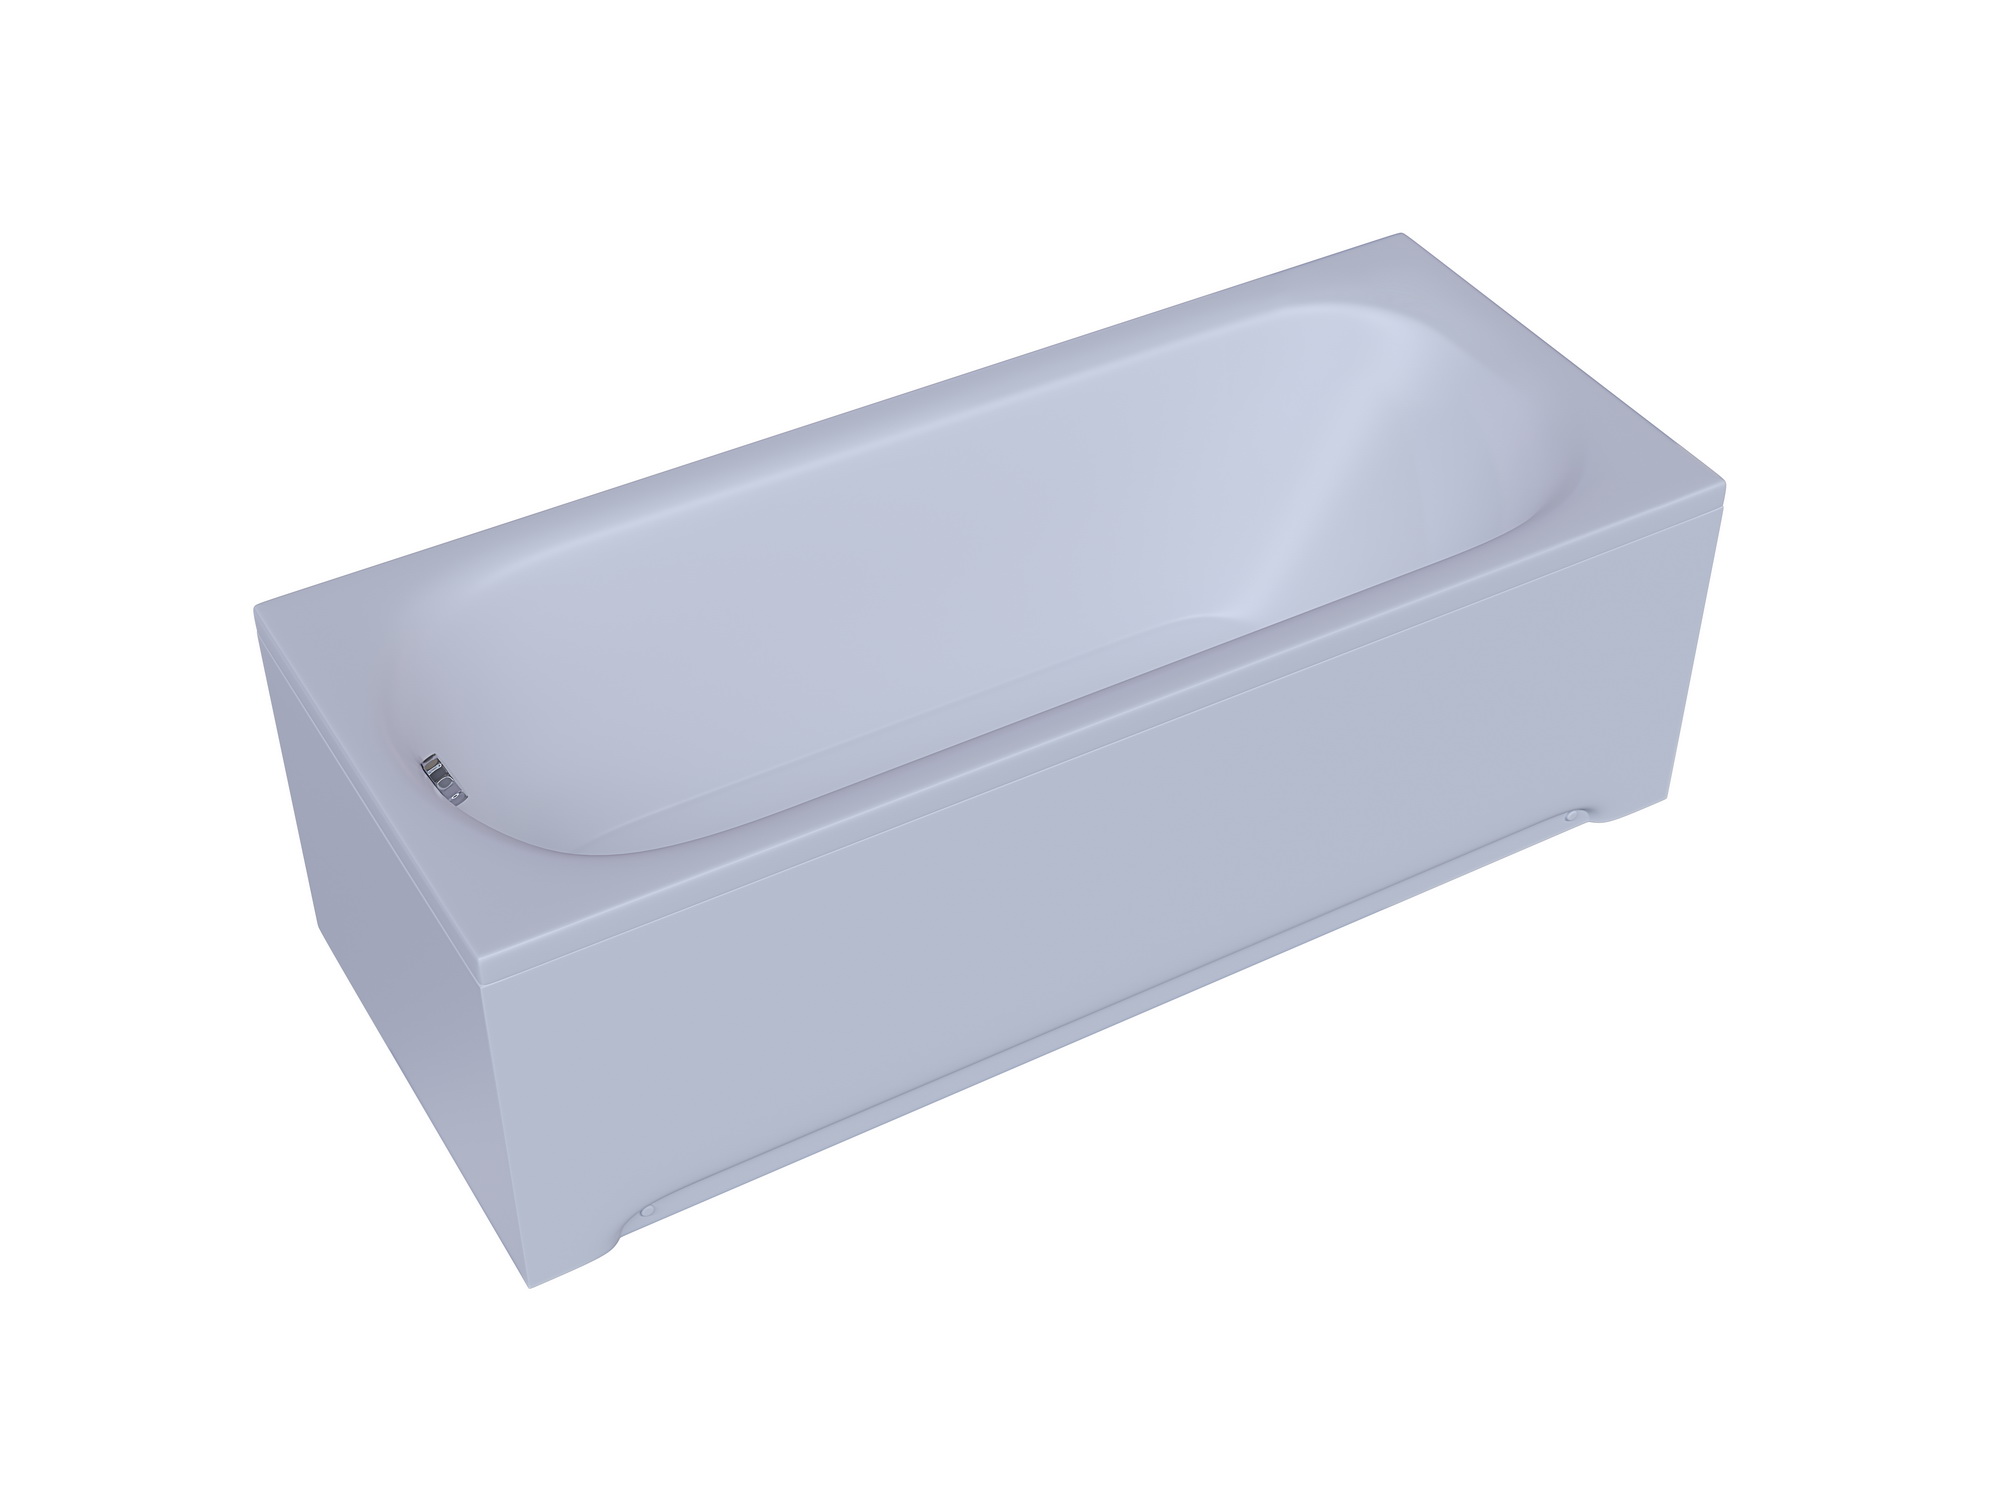 Акриловая ванна Aquatek Lifestyle Лугано 150x70 LUG150-0000001 без гидромассажа, белая, размер 150x70, цвет белый - фото 2